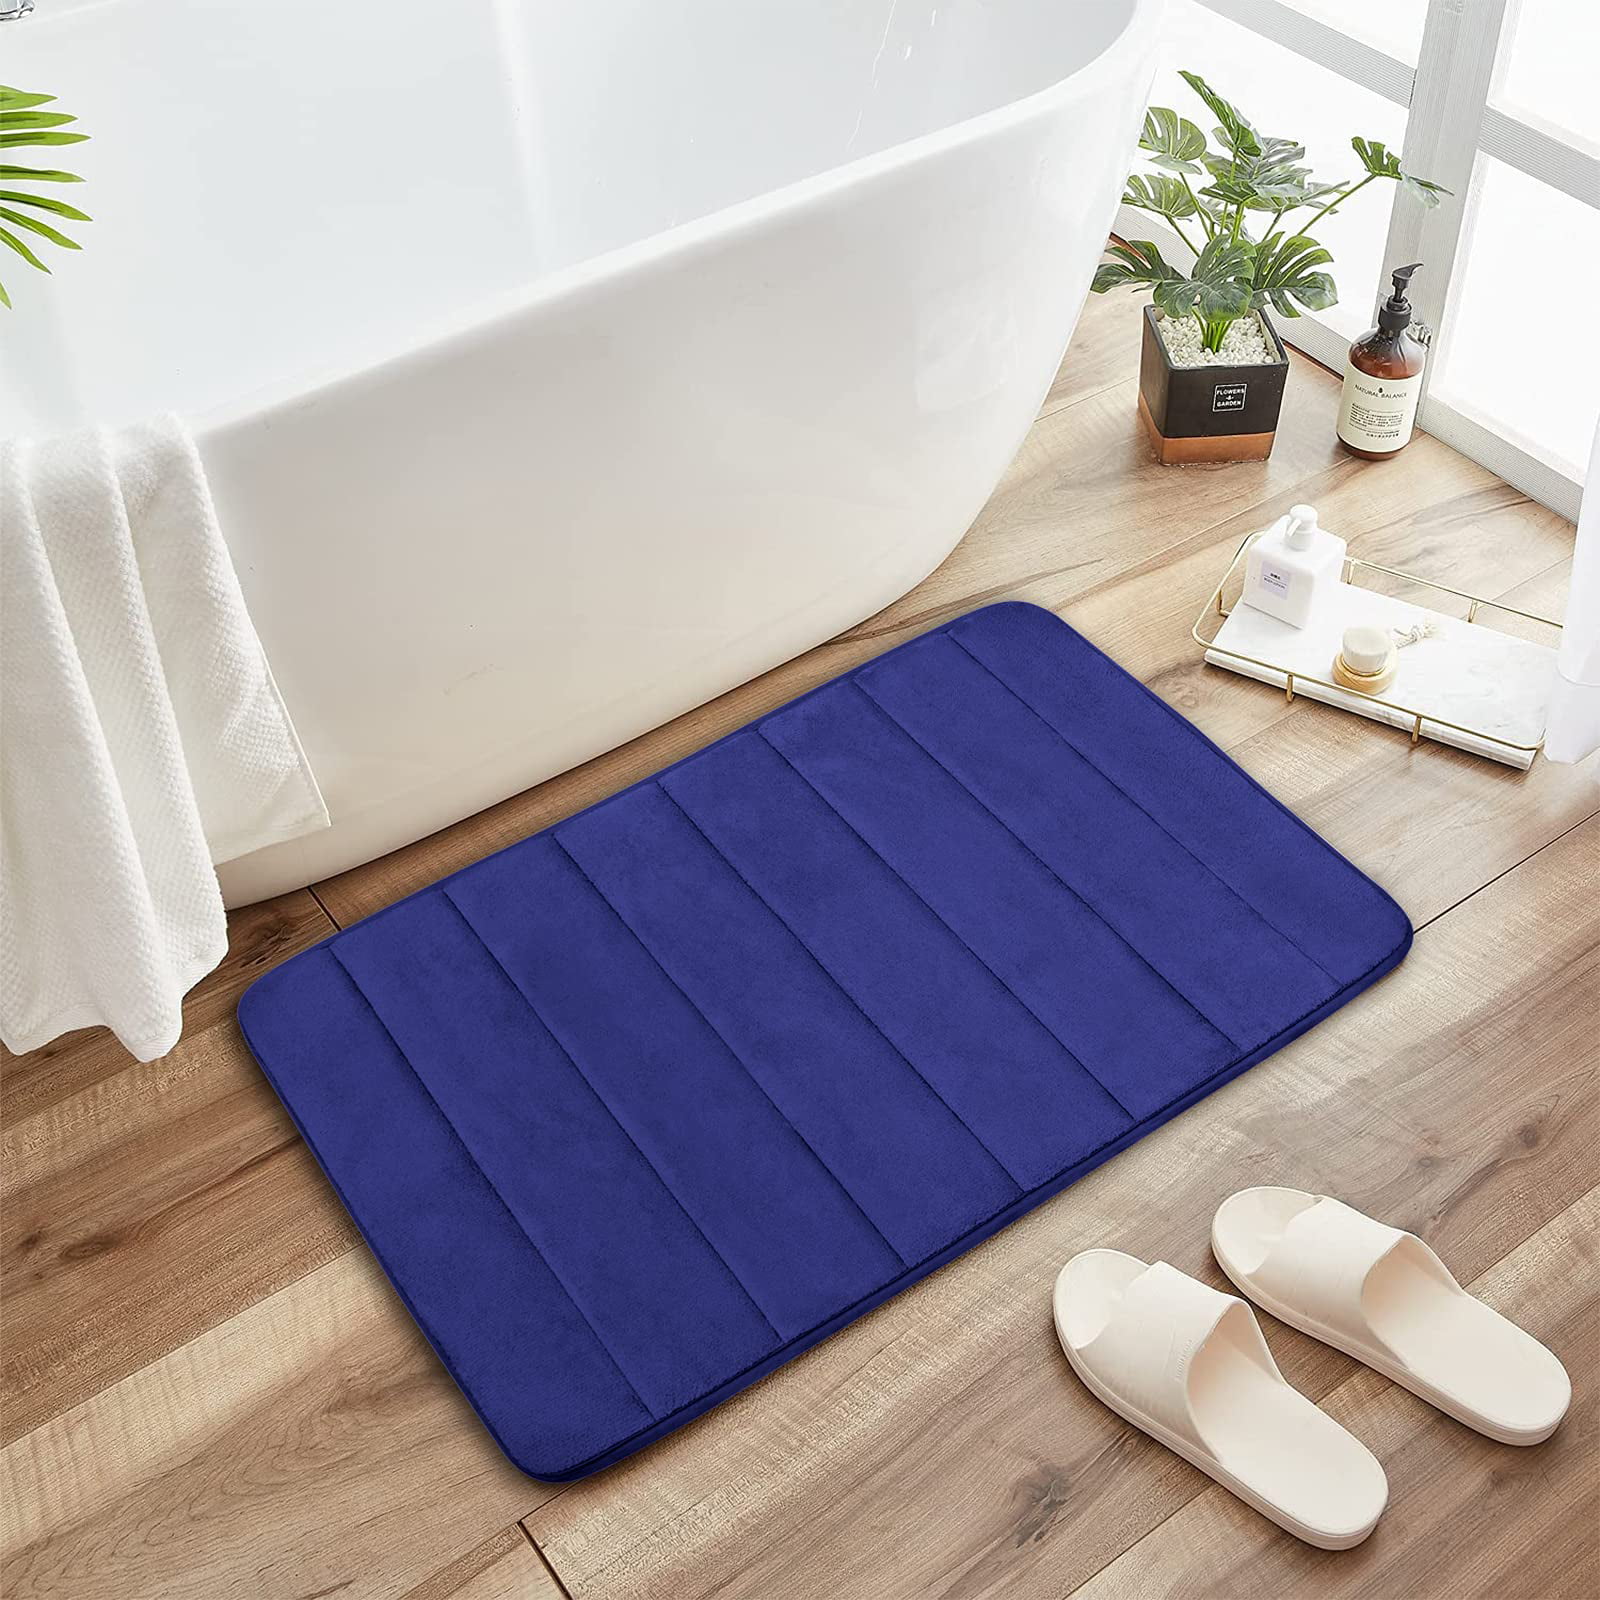 Memory Foam Bath Mats Bedroom Floor Shower Mat Non-slip Absorbent Bathroom Rugs 